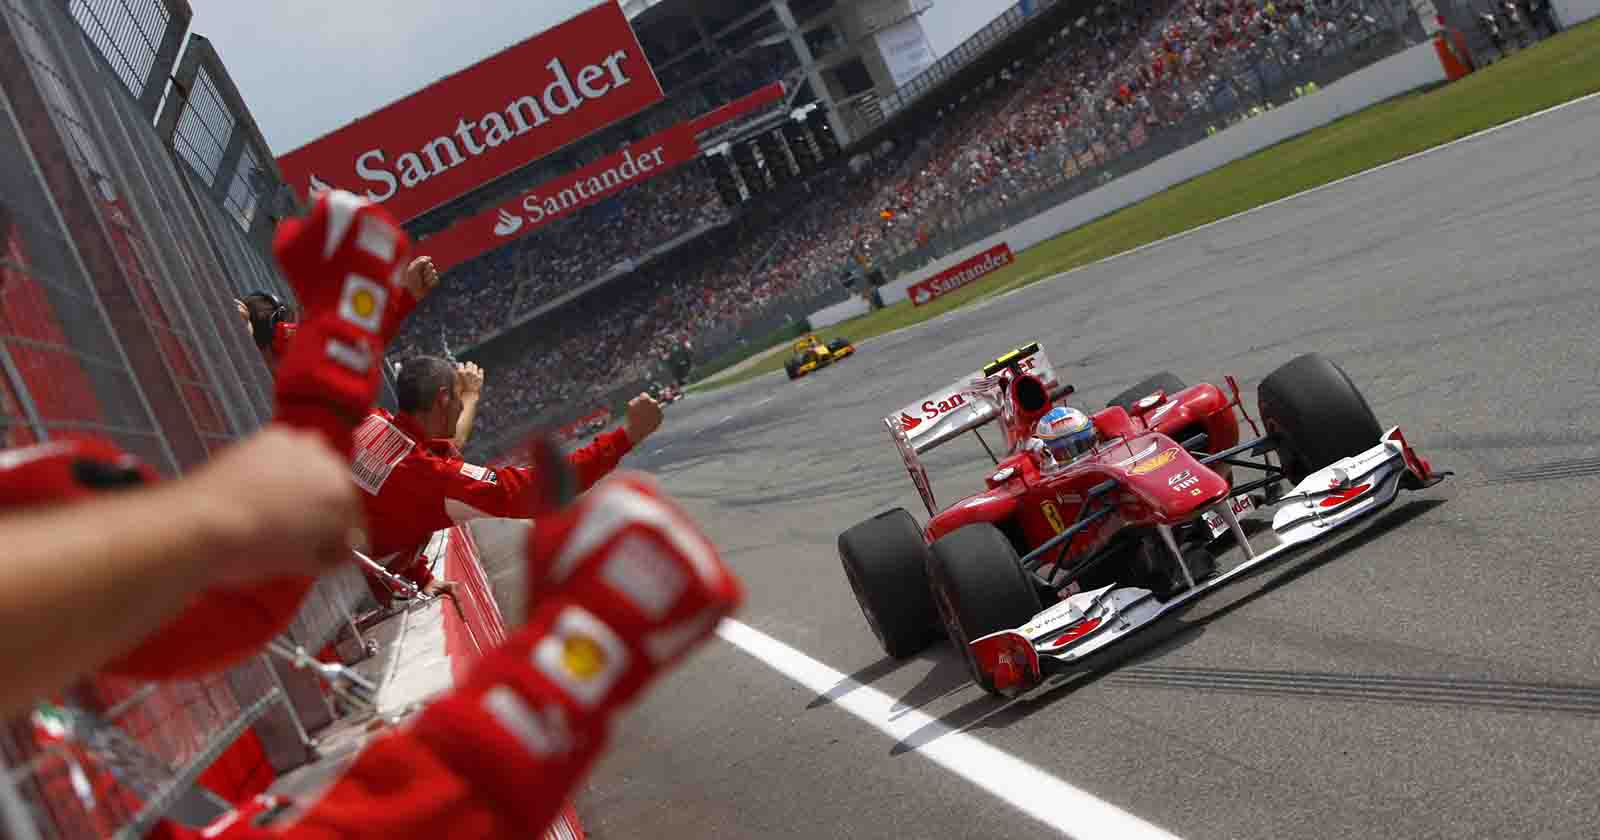 Santander Fórmula 1